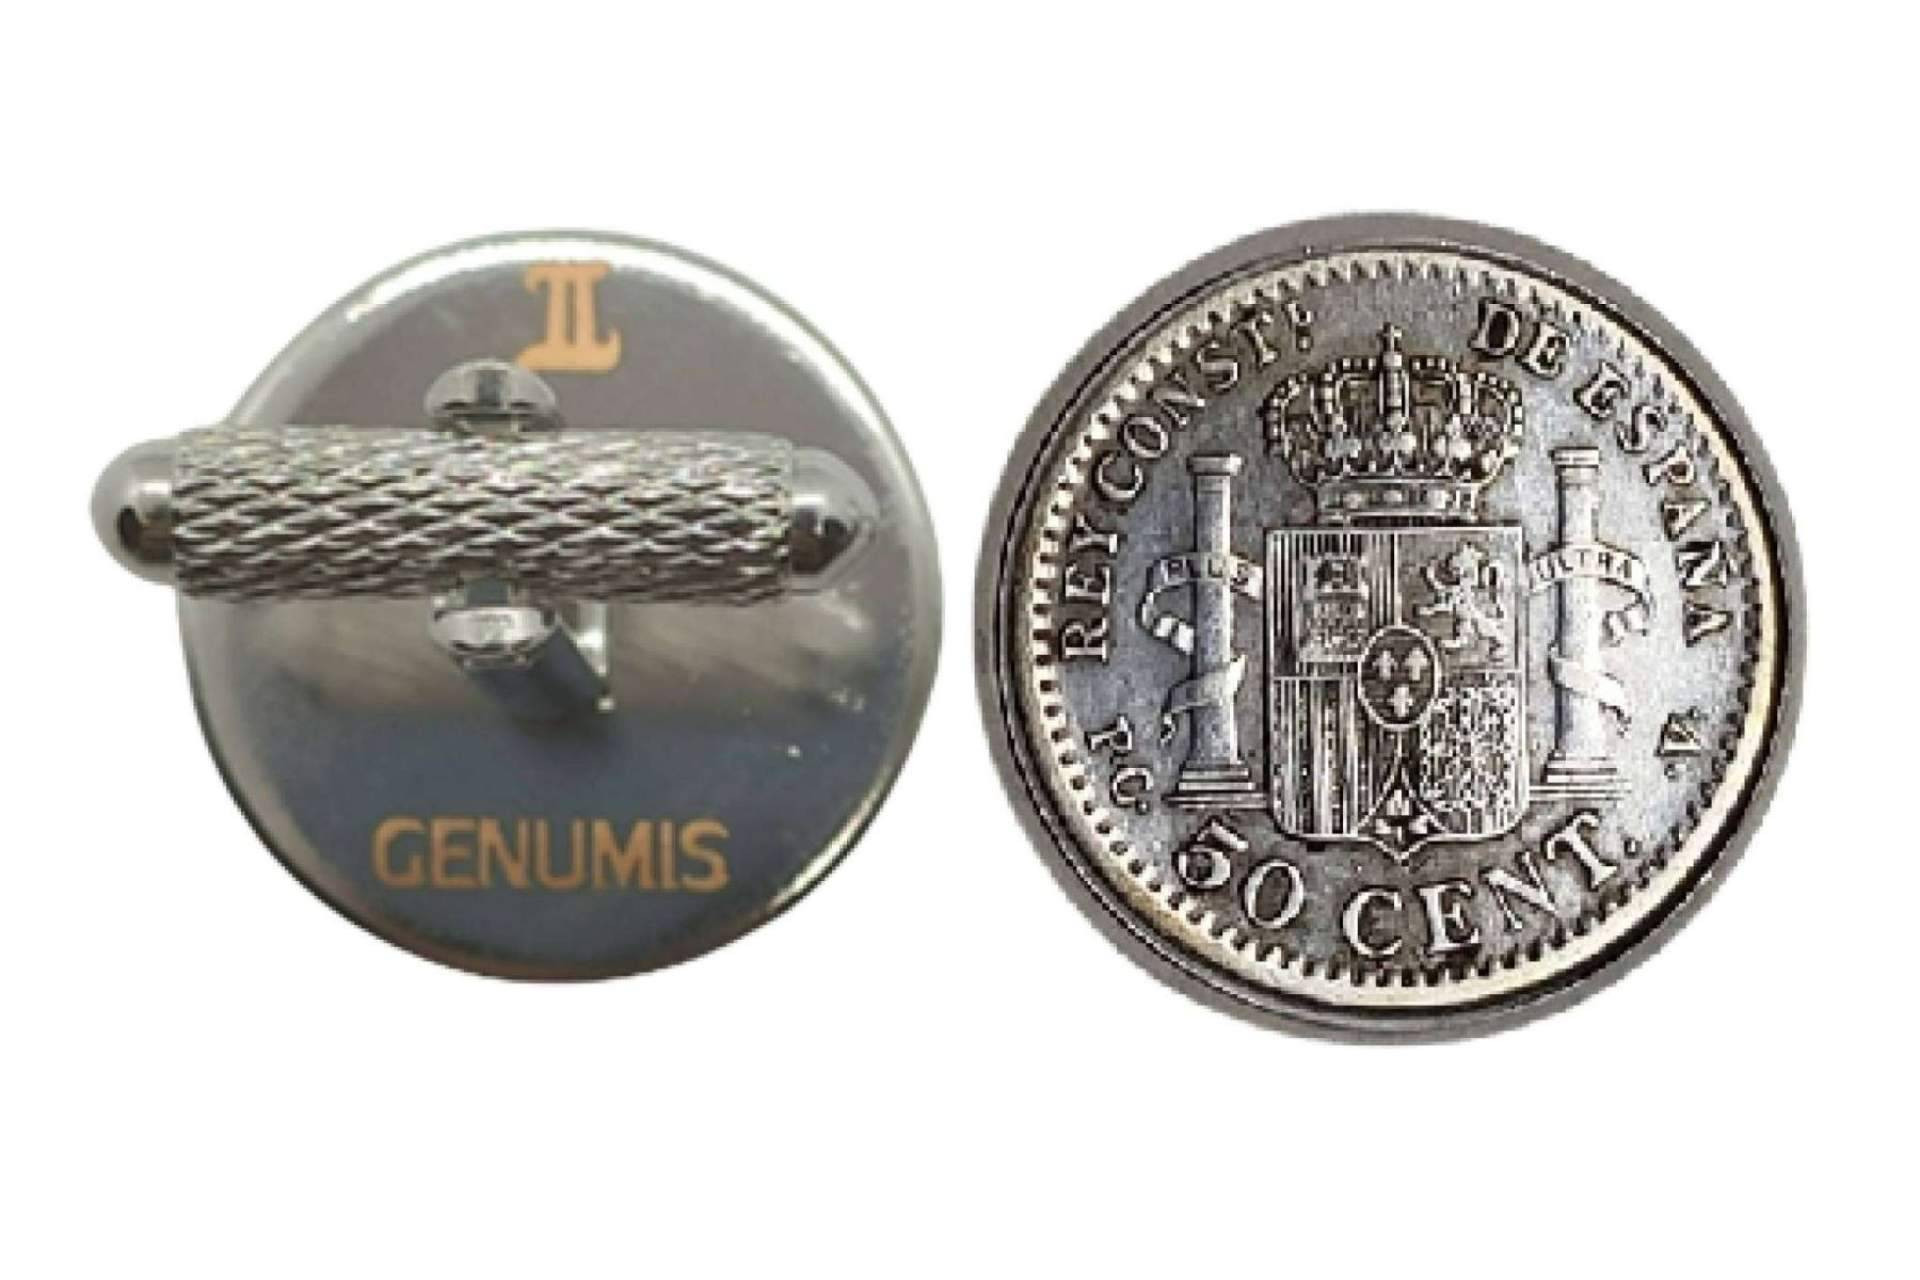  Calidad y artesanía, la joyería de monedas centenarias de Genumis 